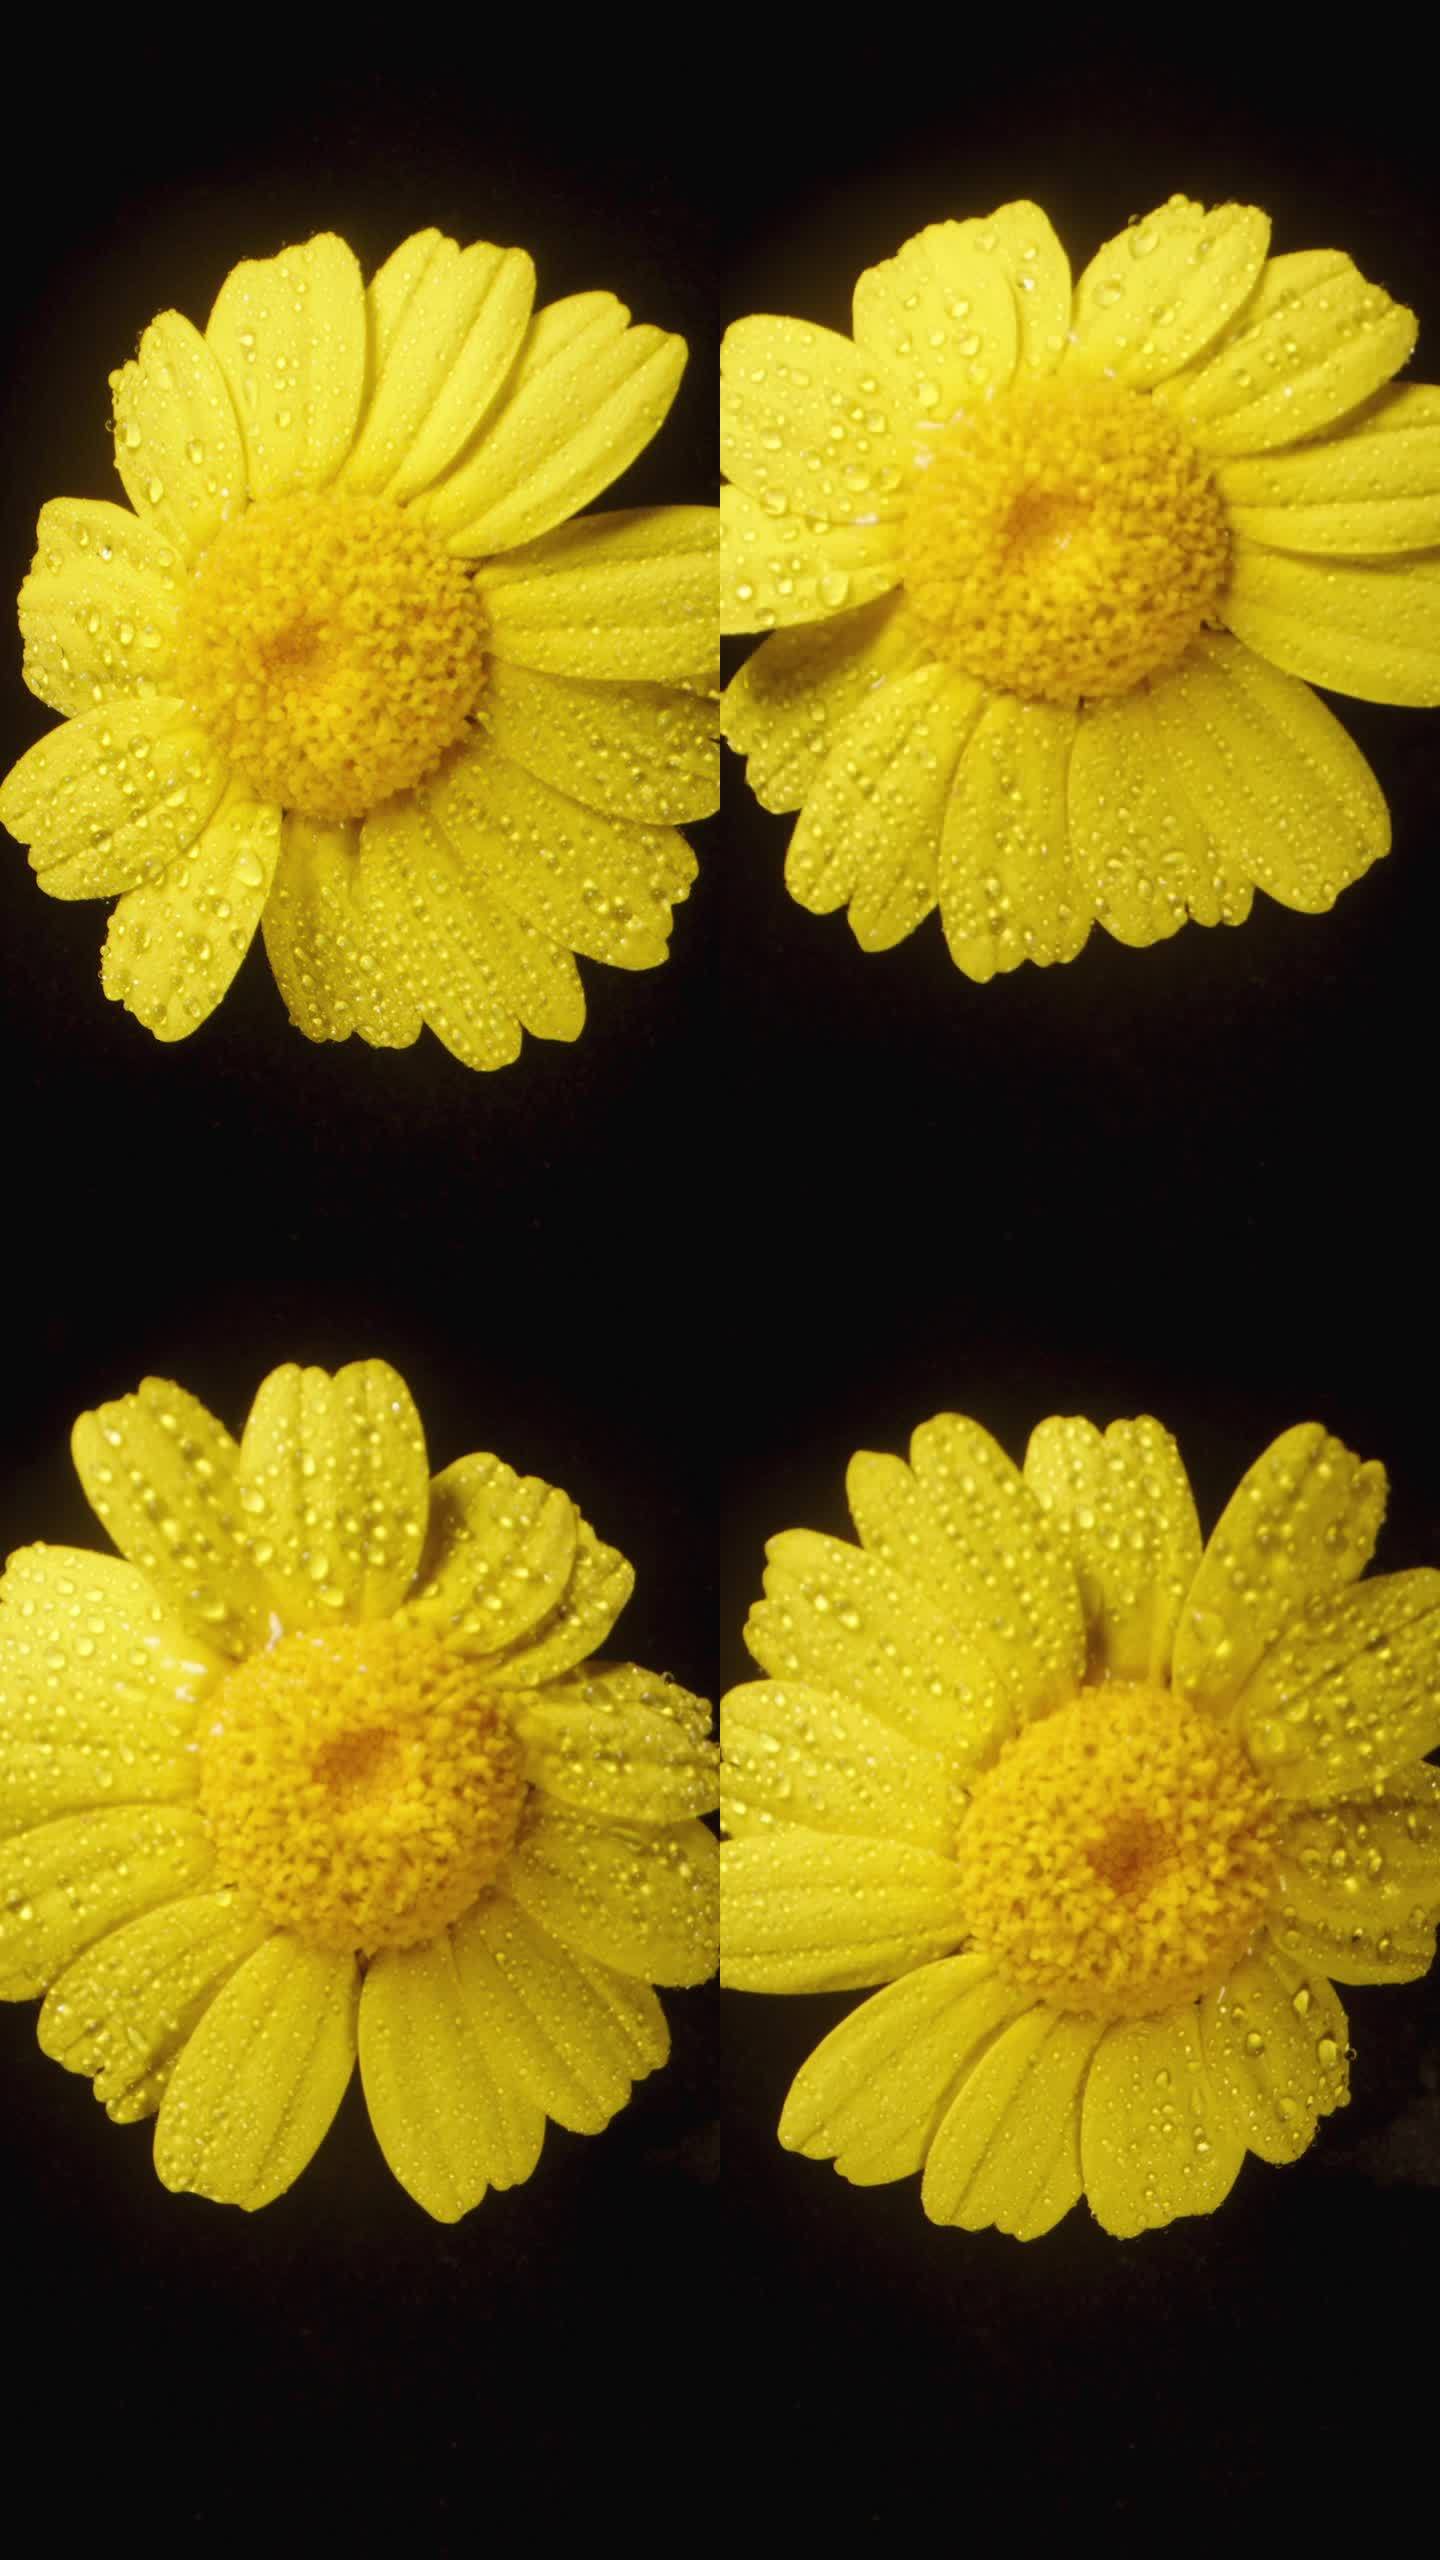 在黑色背景上拍摄的特写镜头中，一朵黄色的水仙花被水滴包围着。垂直视频。